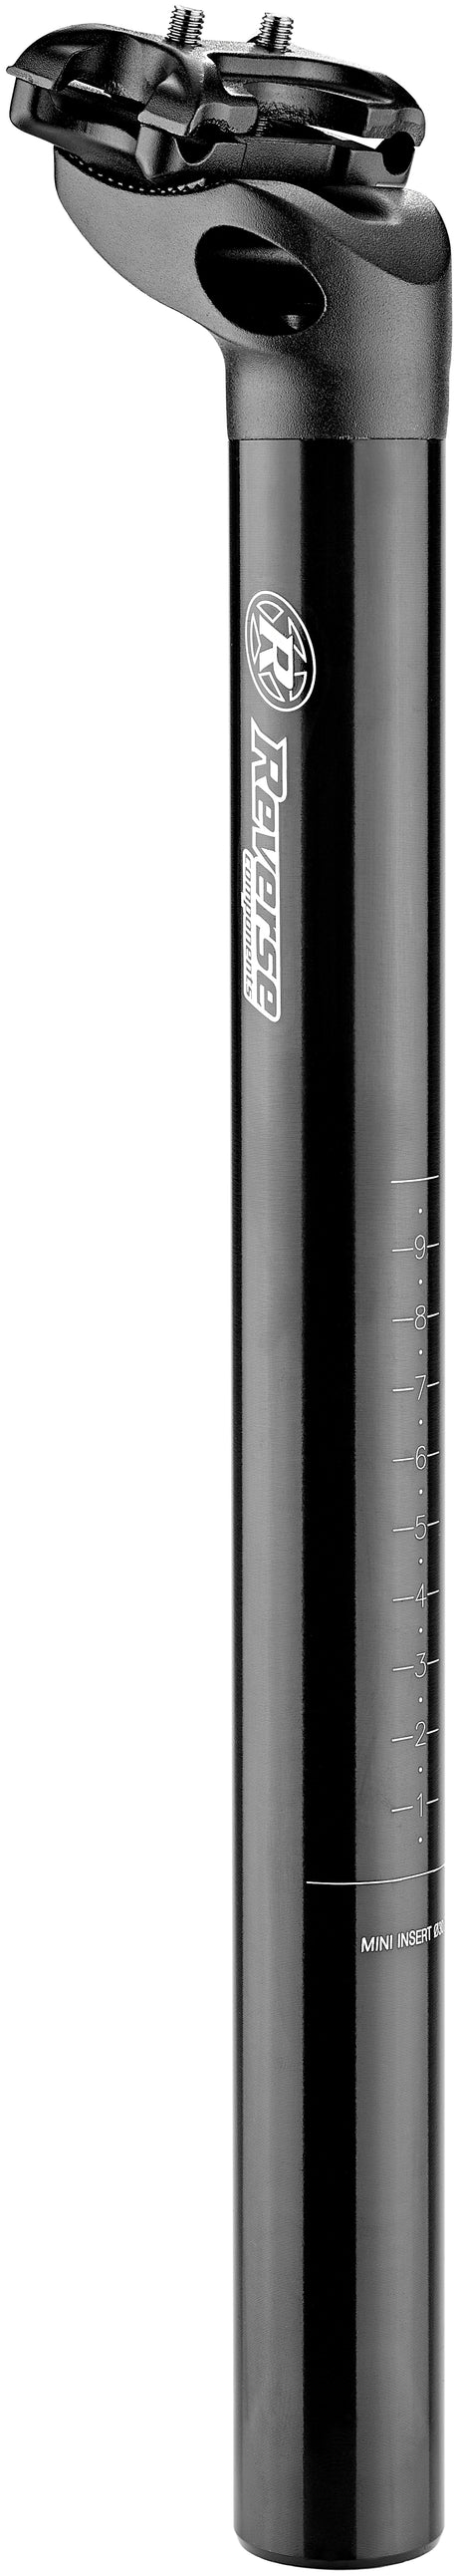 Reverse Comp Sattelstütze Ø30,9mm schwarz